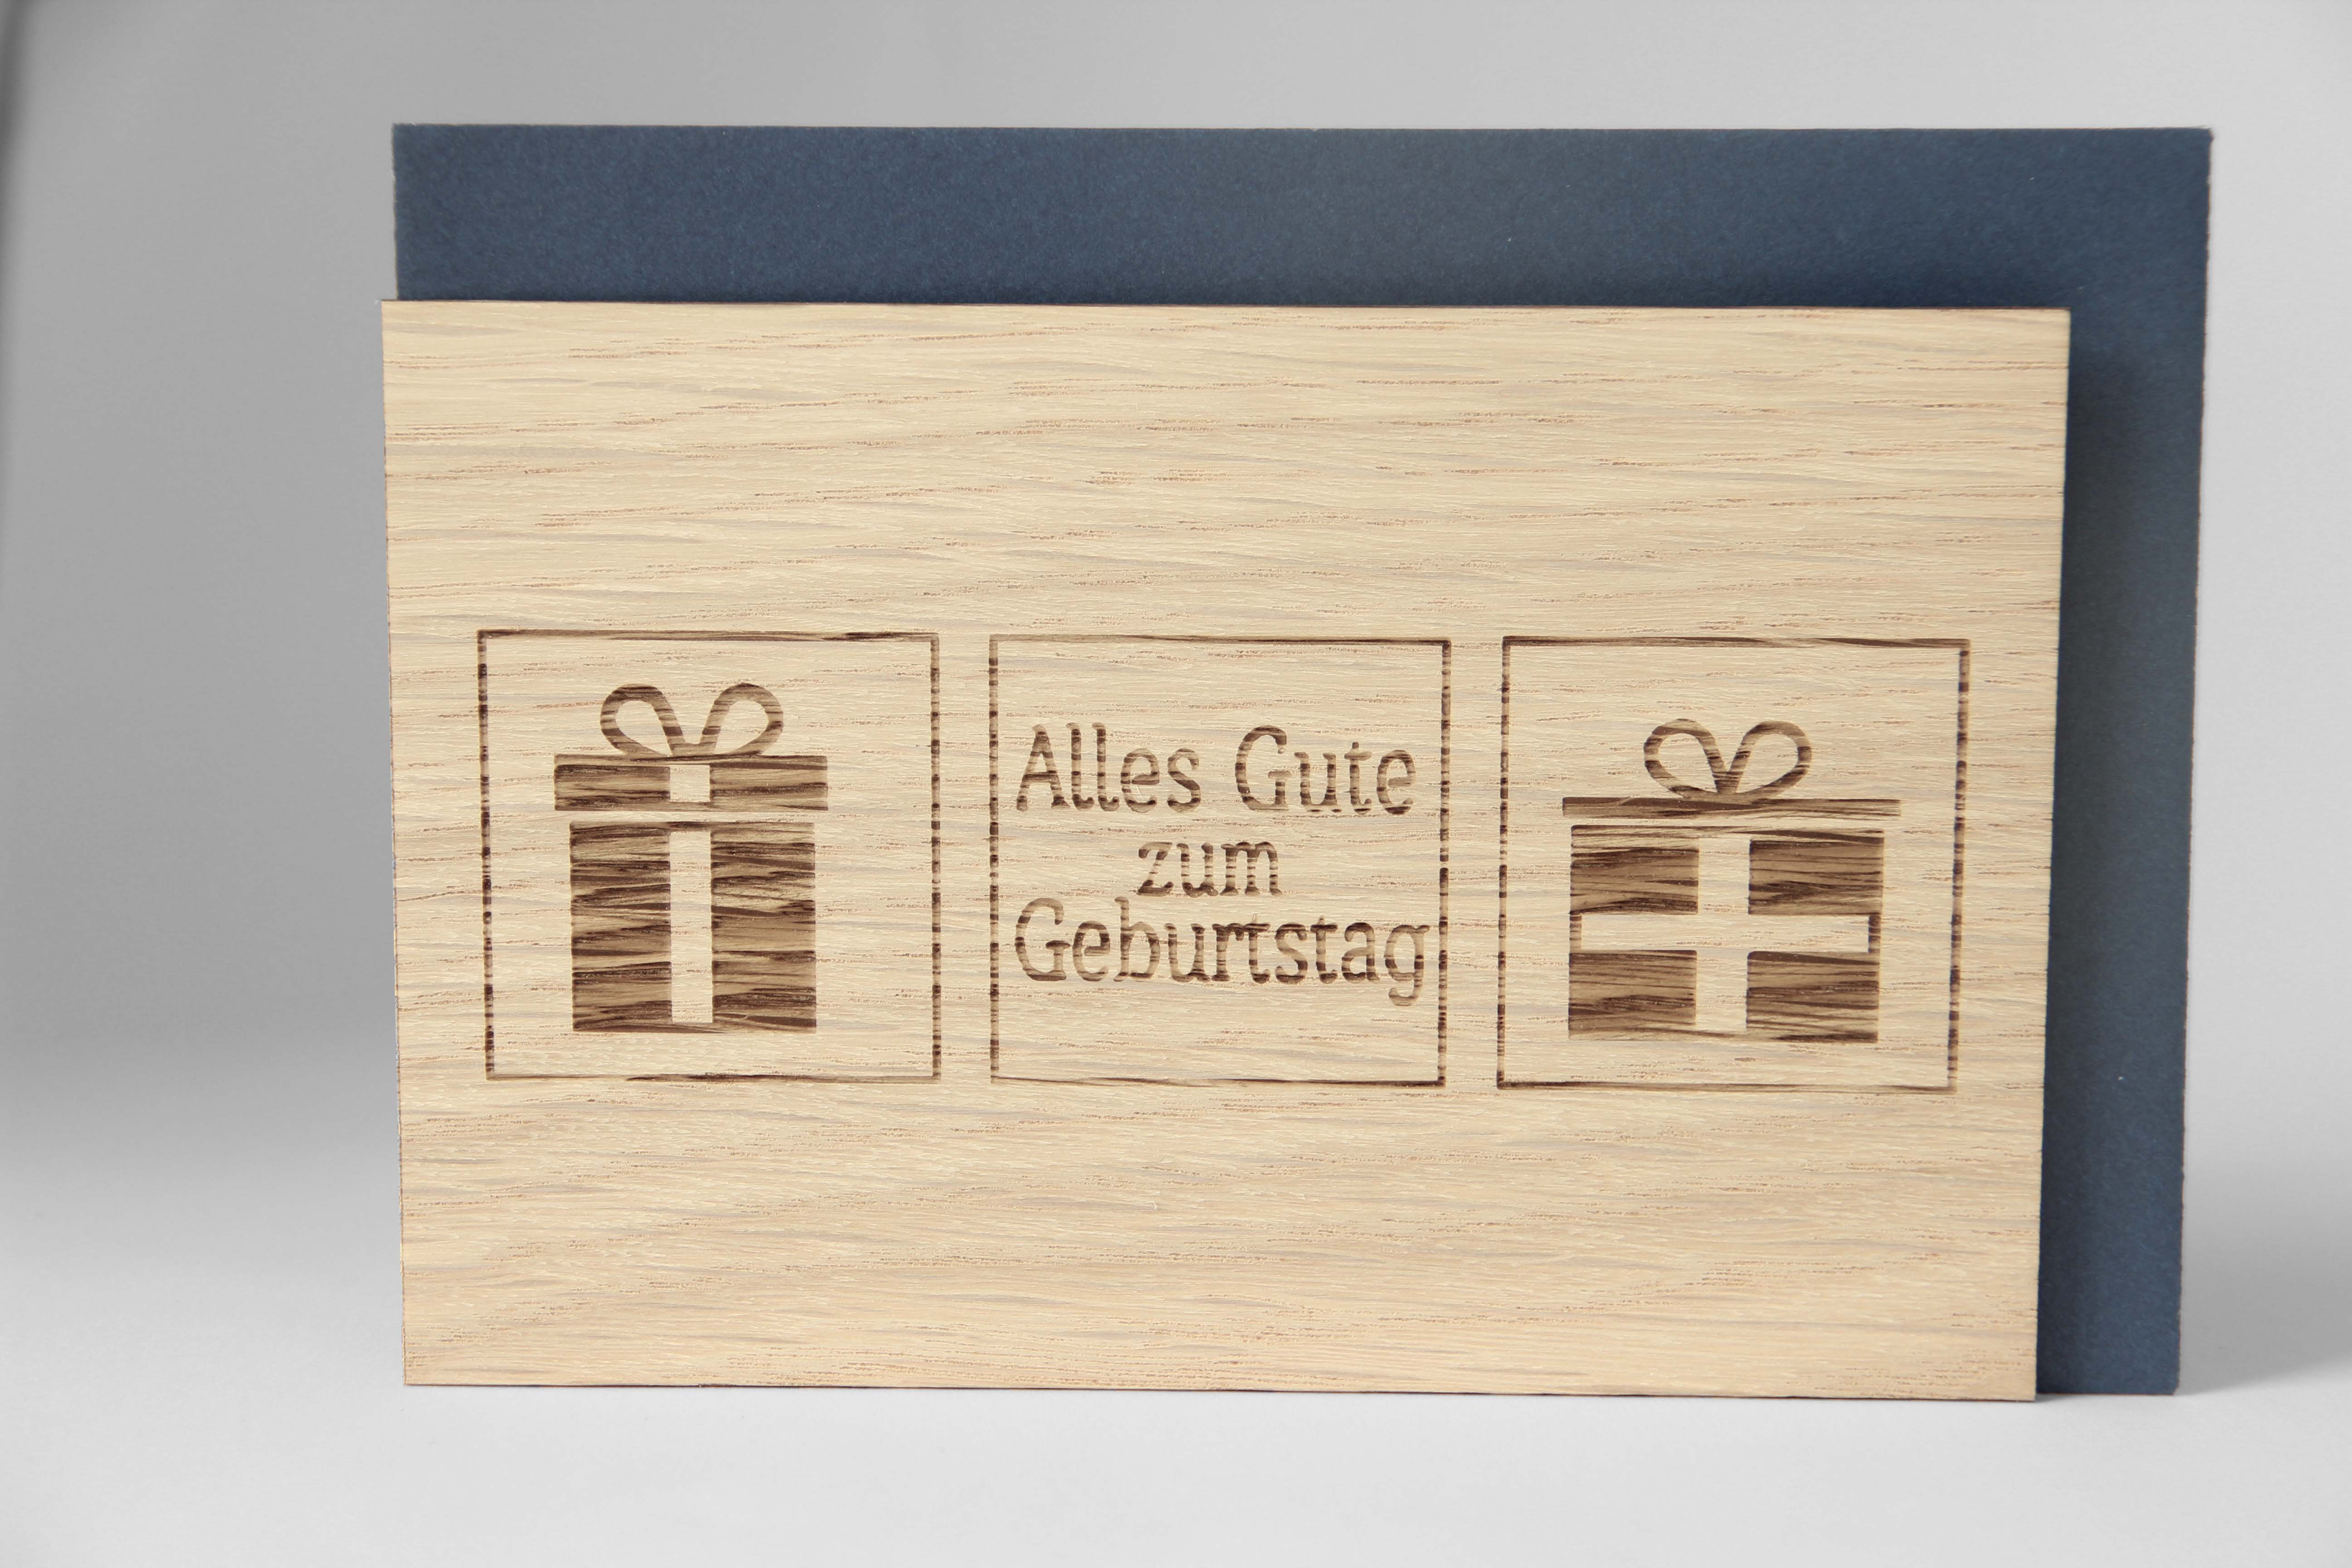 Holzgrusskarten - Geburtstagskarte "Alles Gute zum Geburtstag" mit Geschenkpaketen, aus Eiche